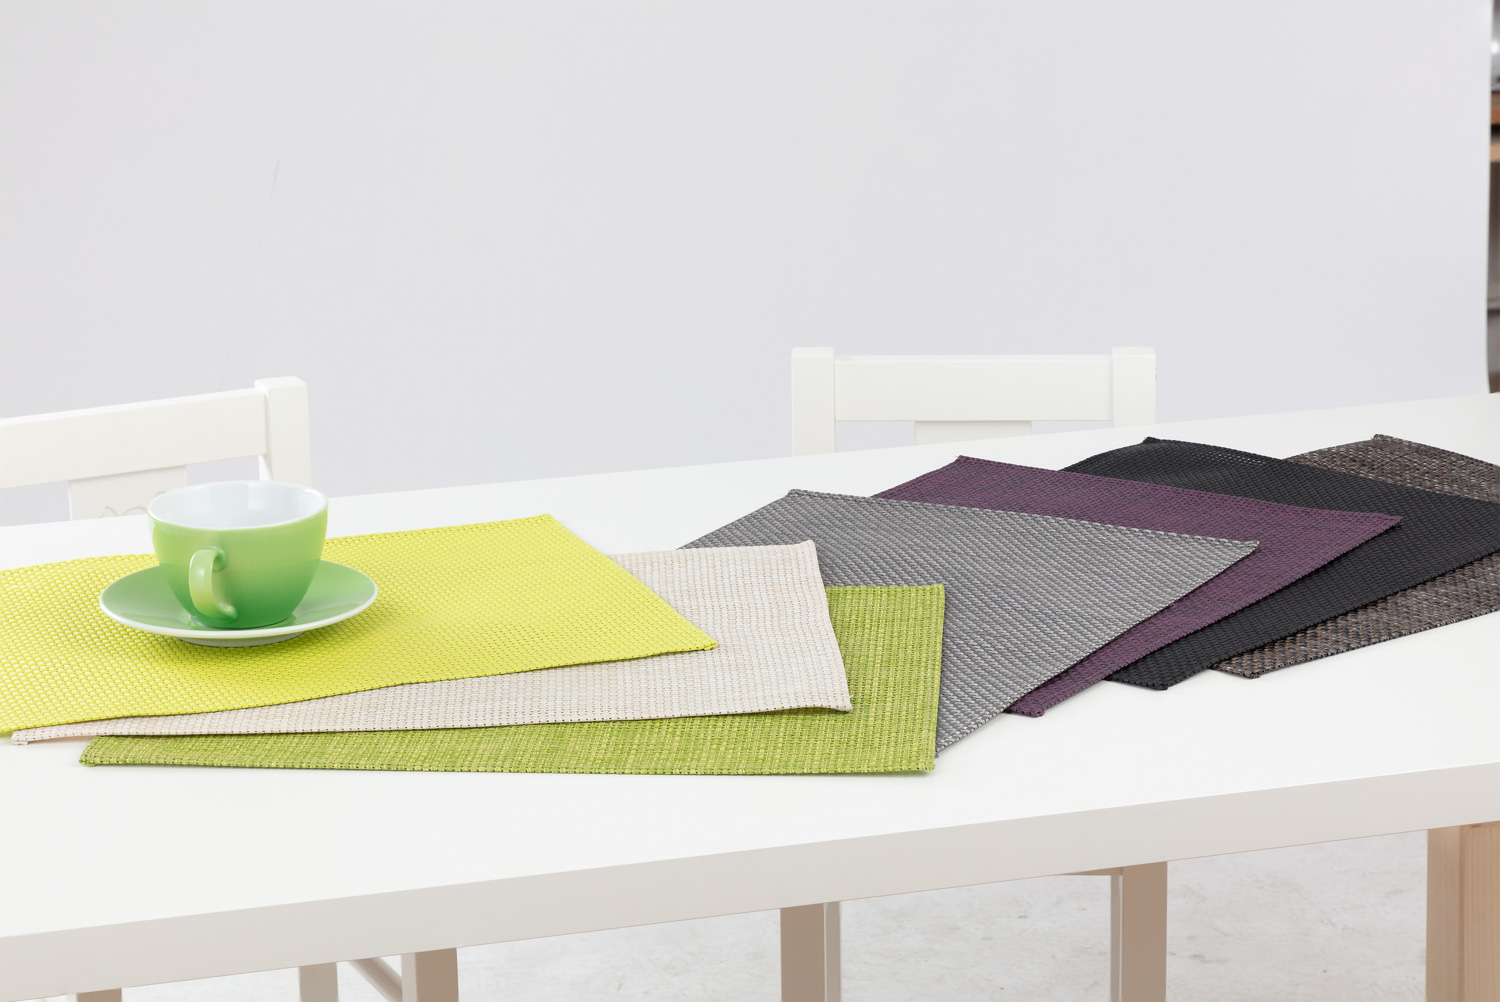 APS Tischset HIVA, Farbe: grasgrün, Größe: 45 x 33 cm, PVC, Schmalband